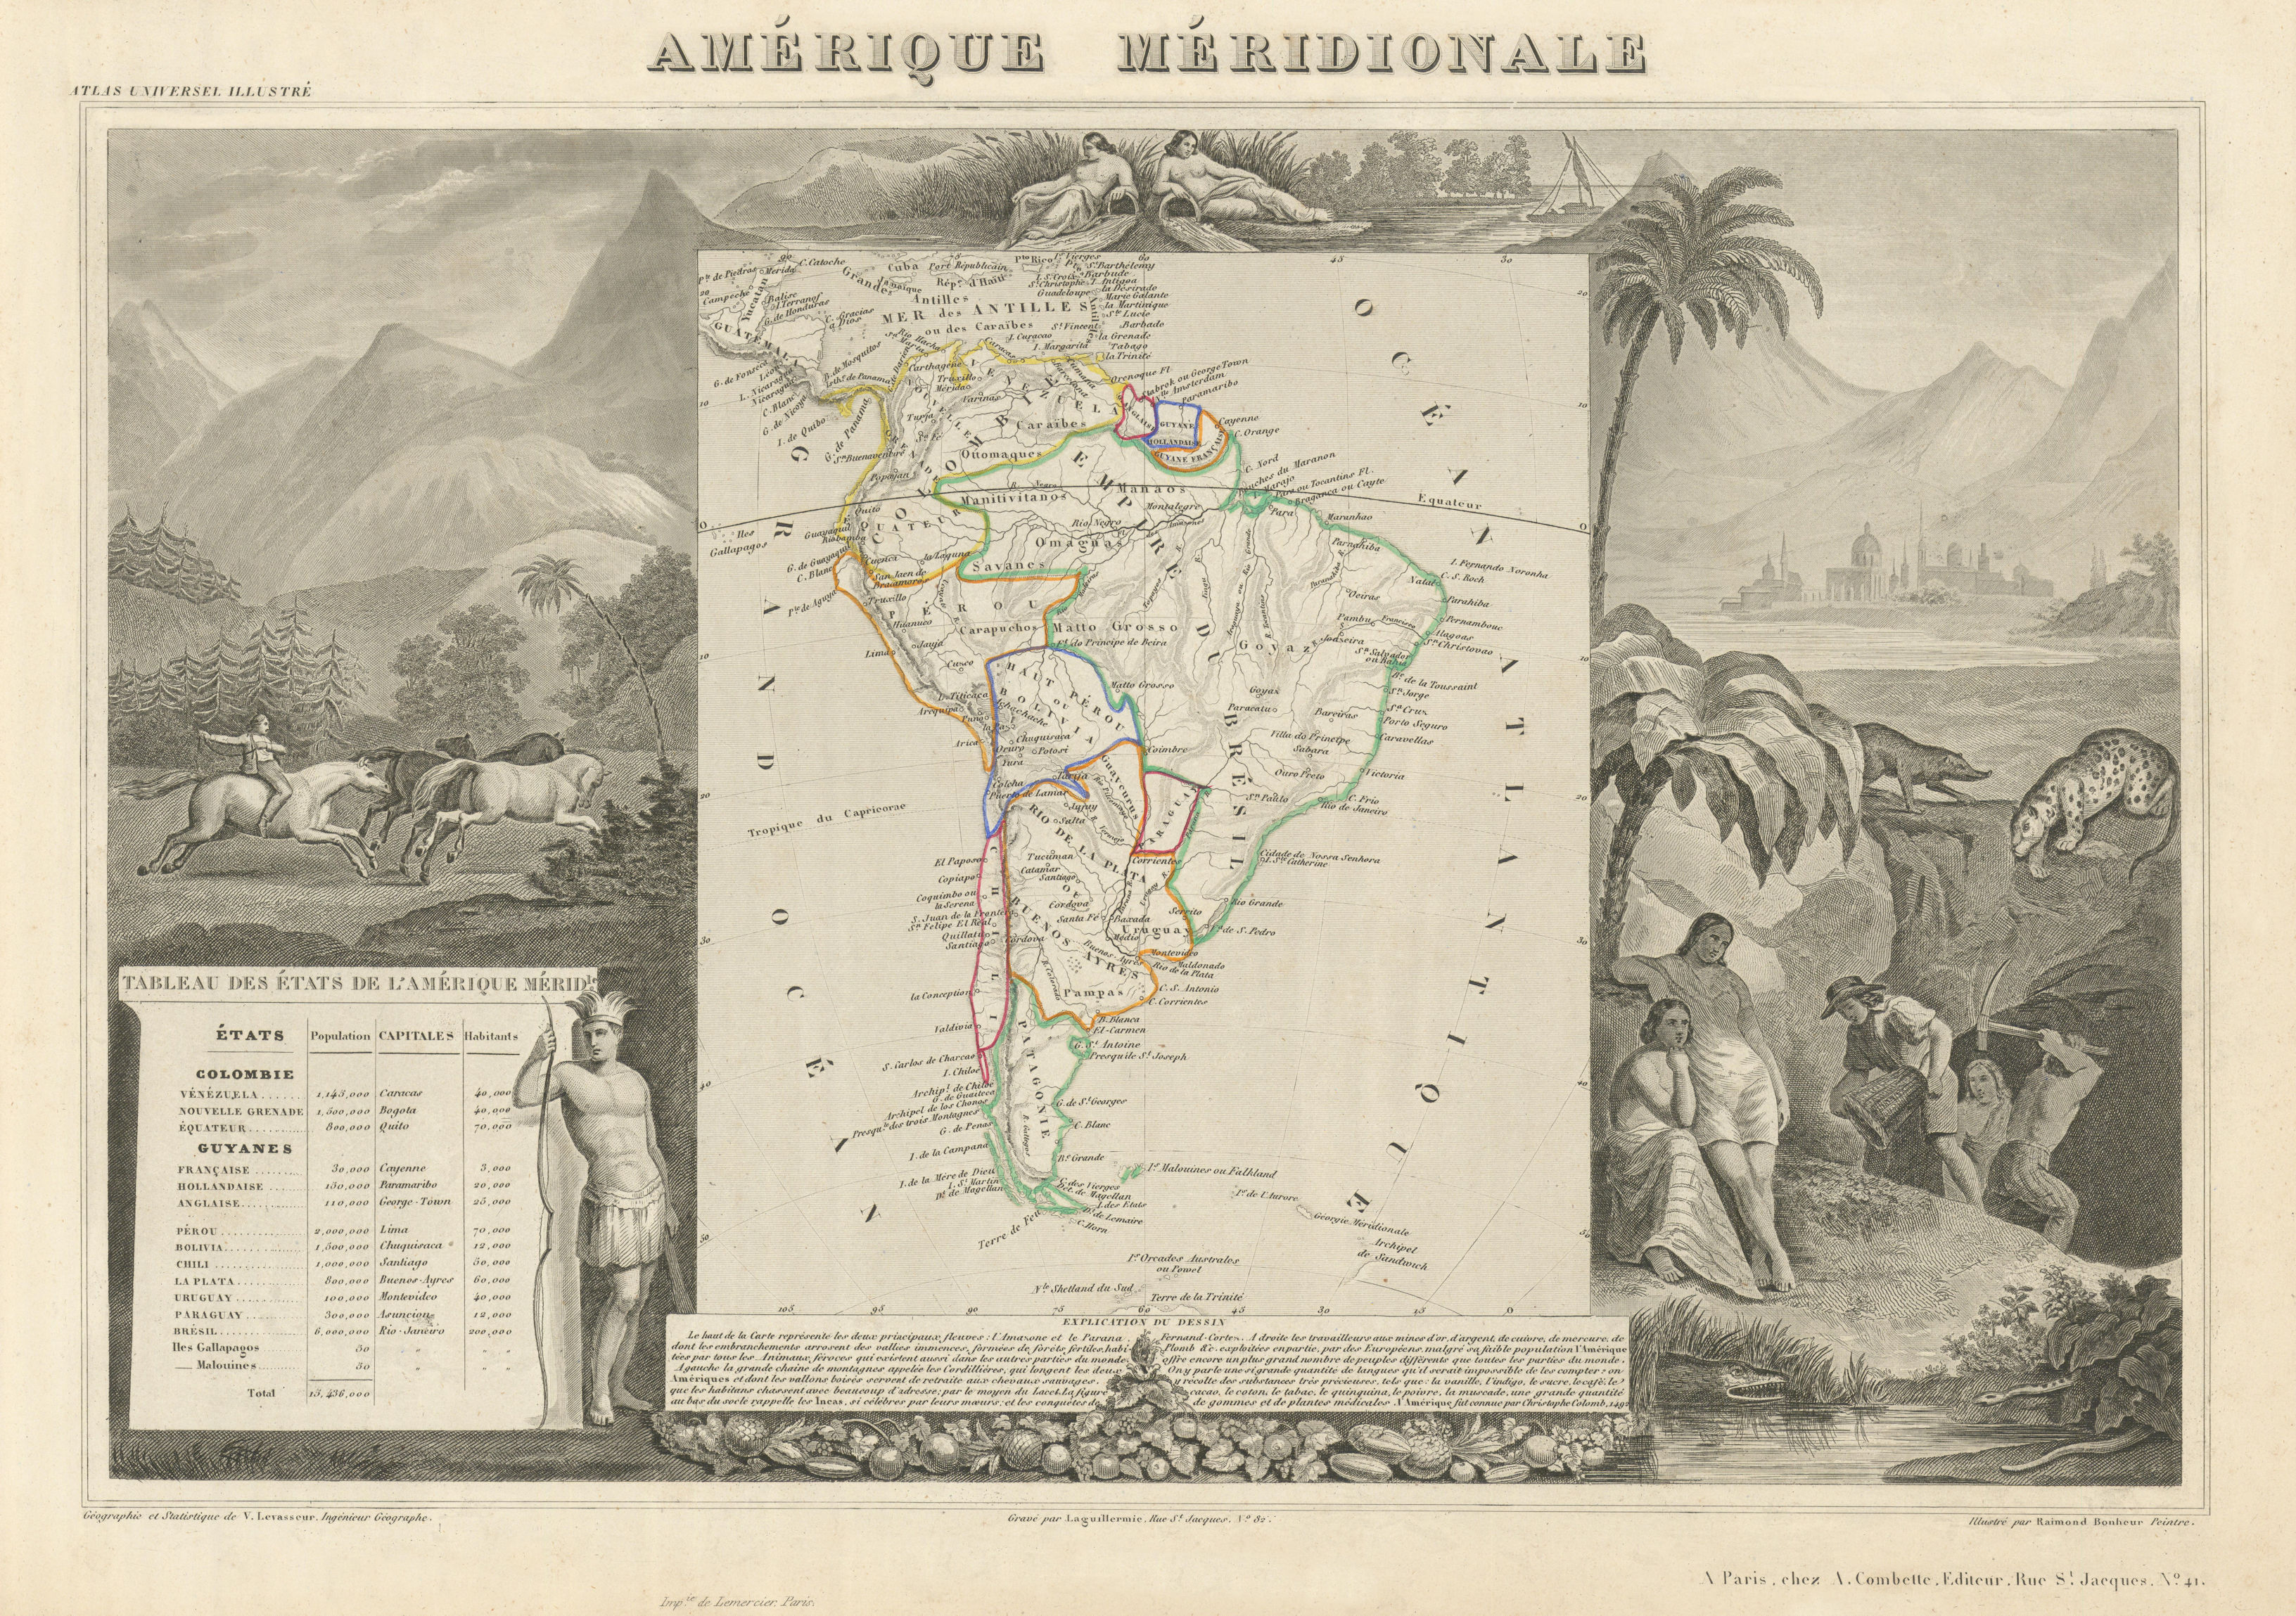 Associate Product AMÉRIQUE MERIDIONALE. South America. Antique map/carte. LEVASSEUR 1856 old